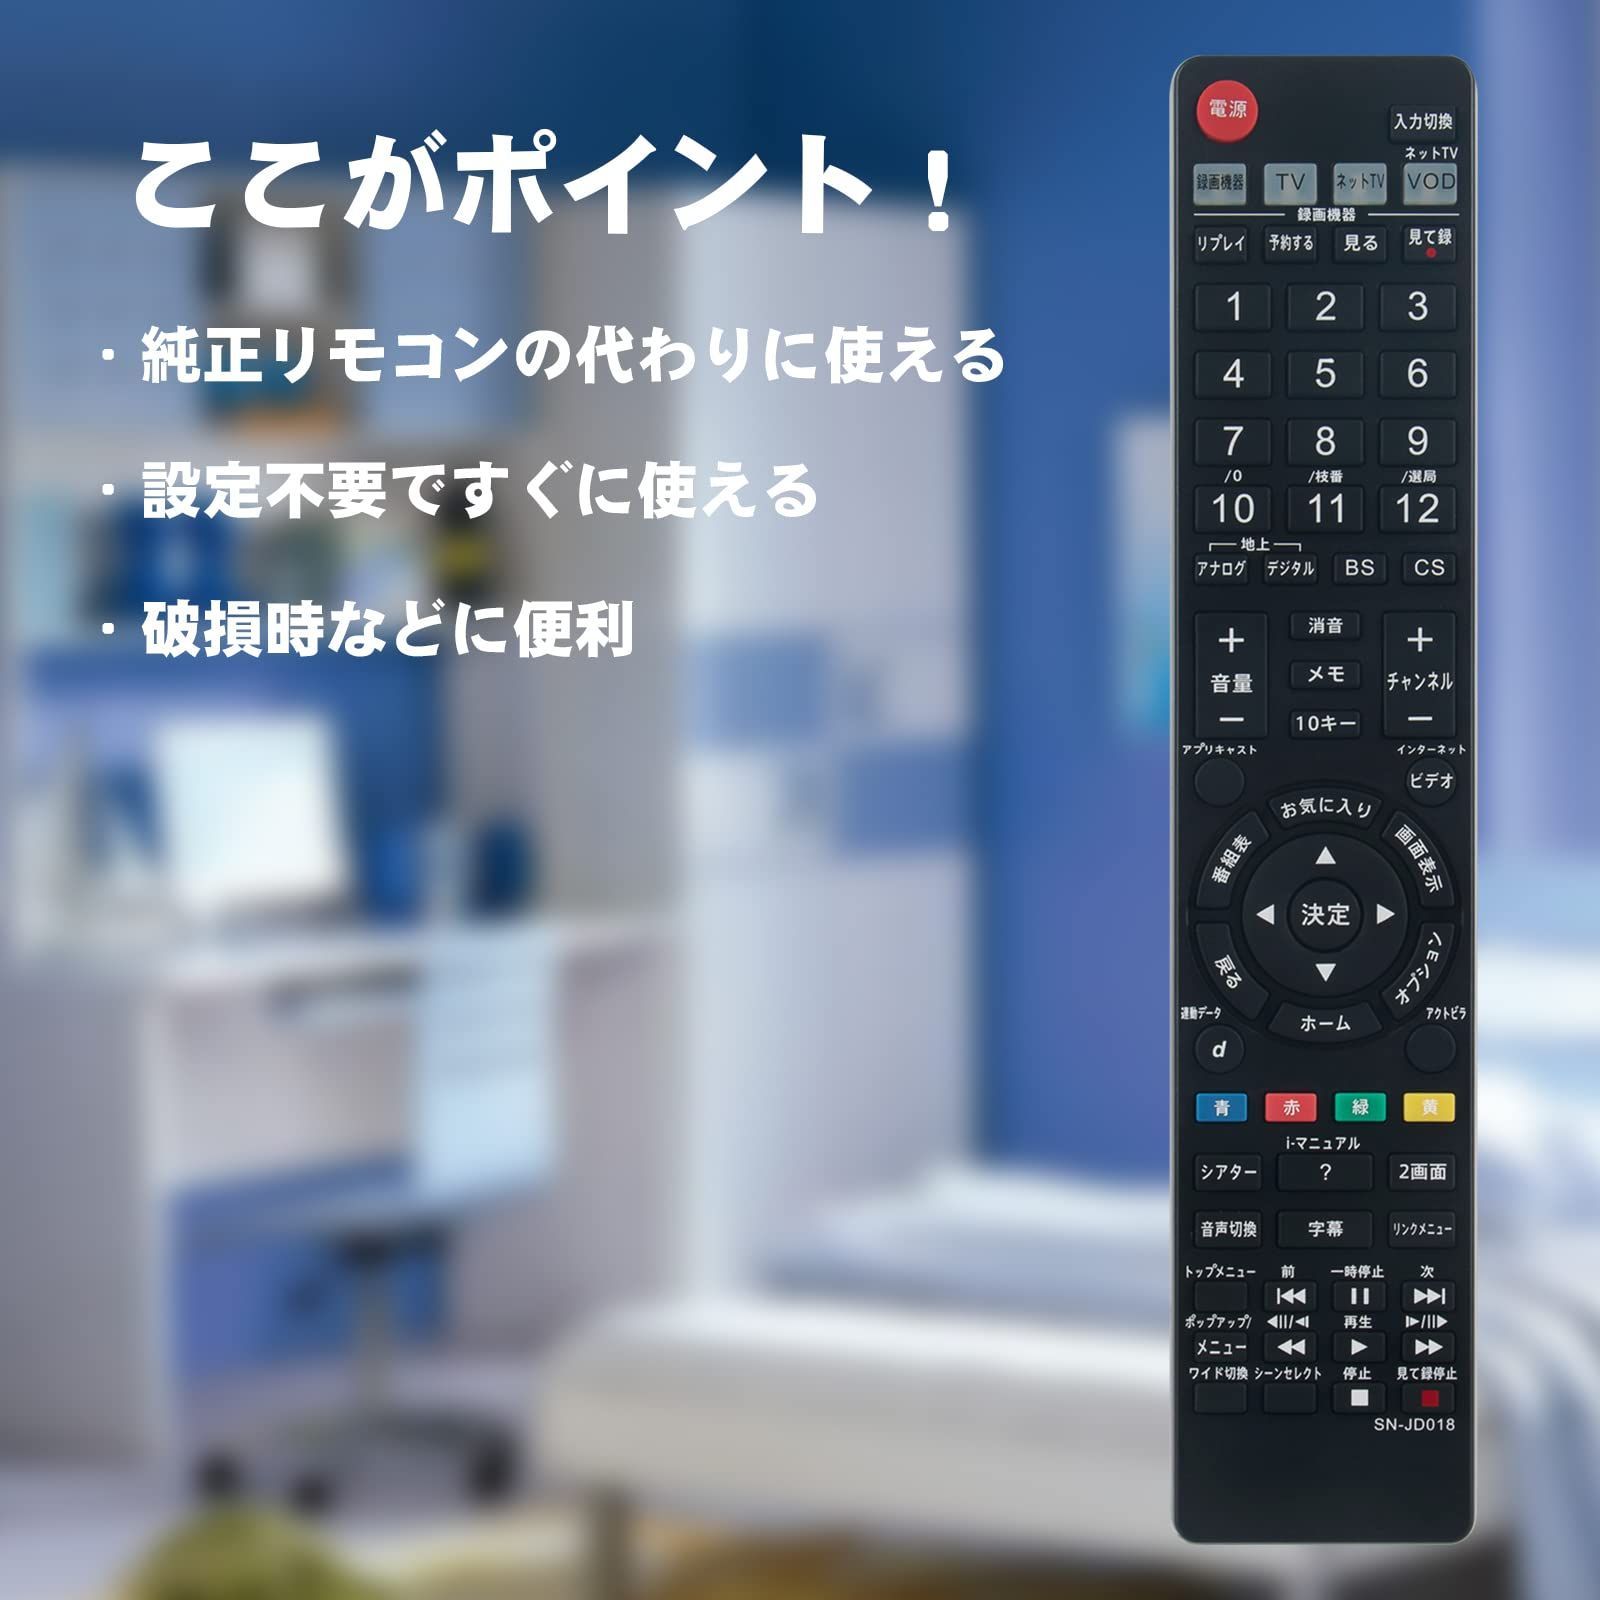 ソニー テレビリモコン RM-JD010 - テレビ